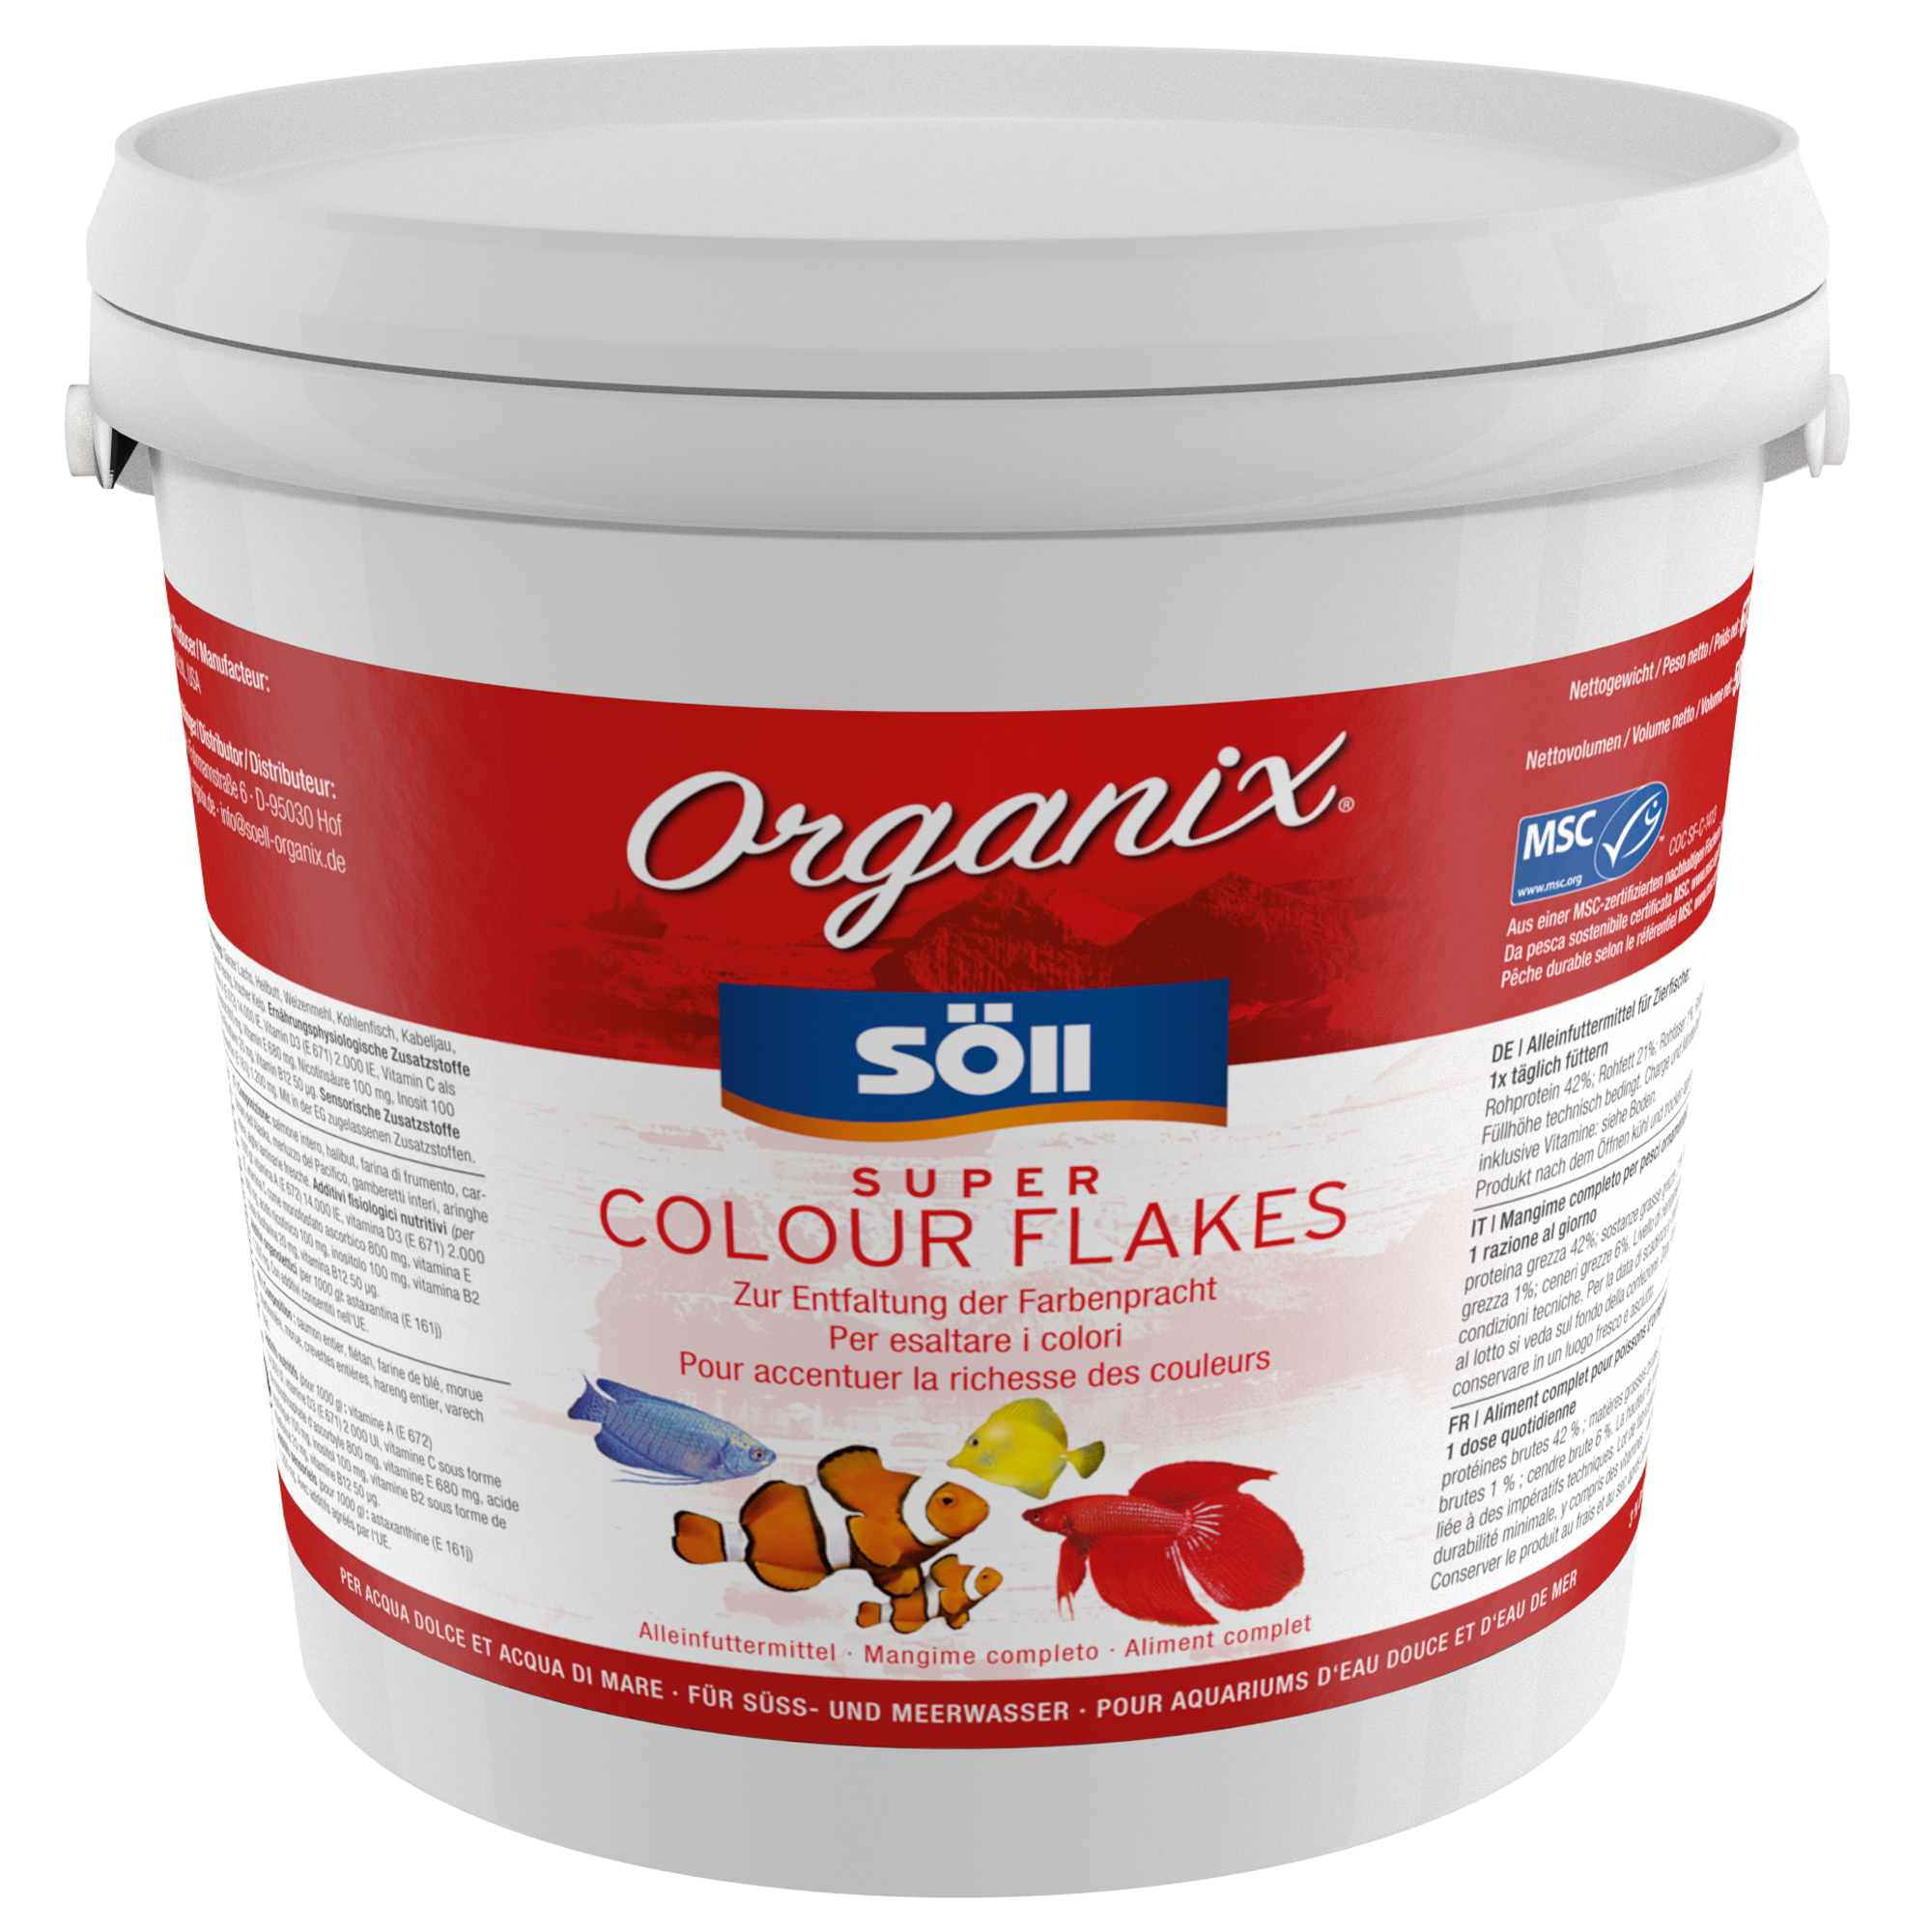 Organix Super Colour Flakes 5 l + product picture